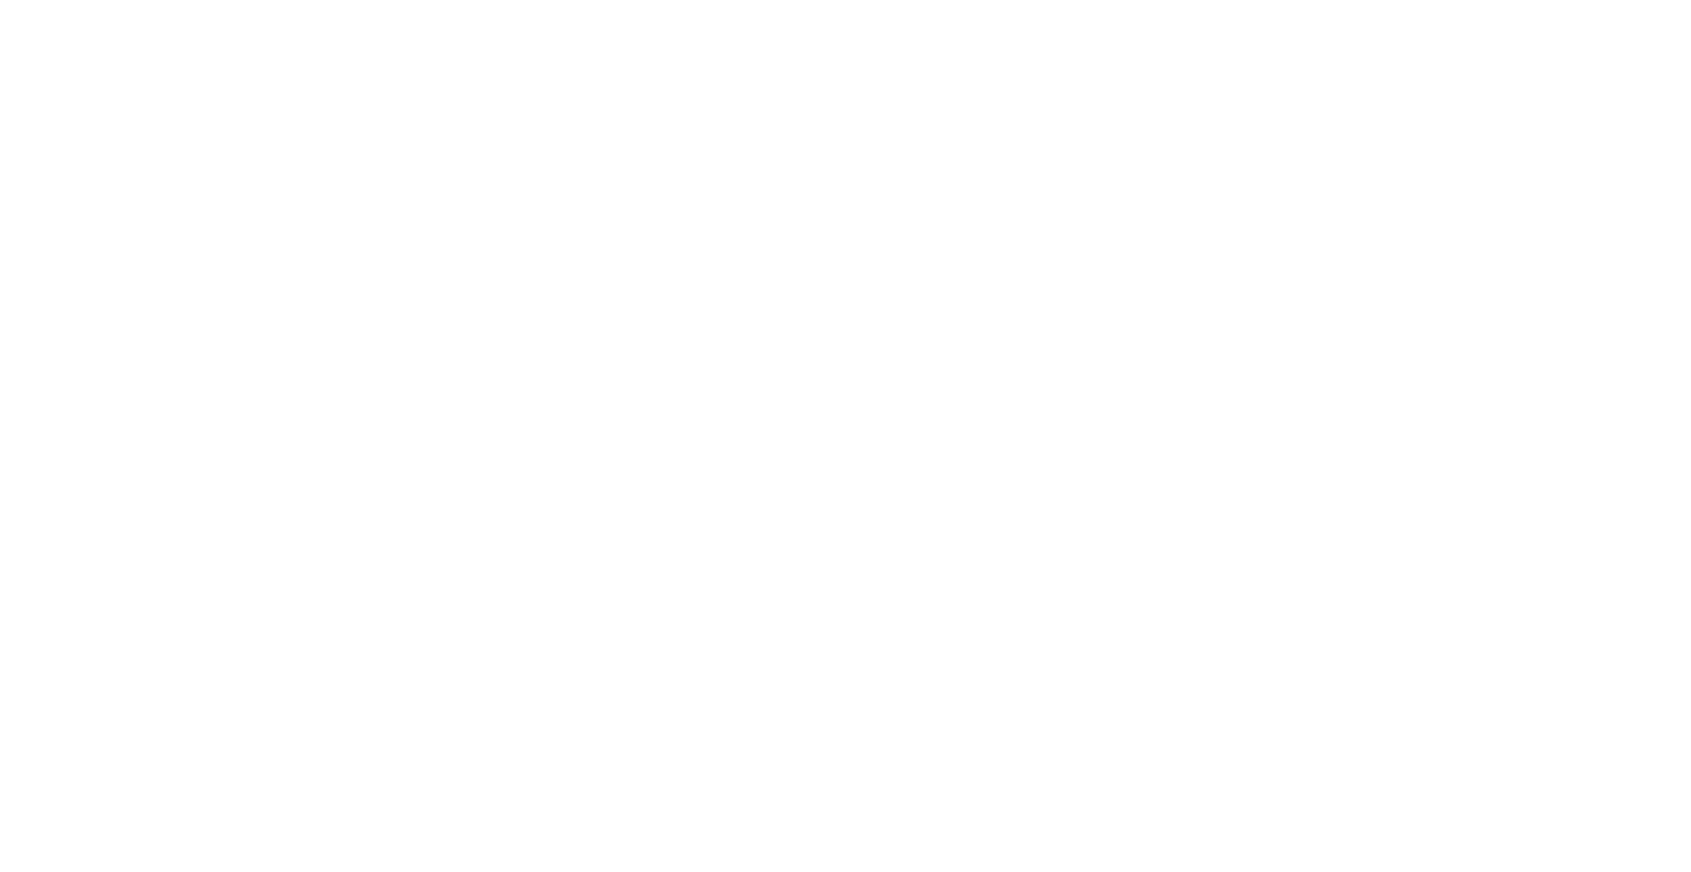 Integrated Talent Strategies